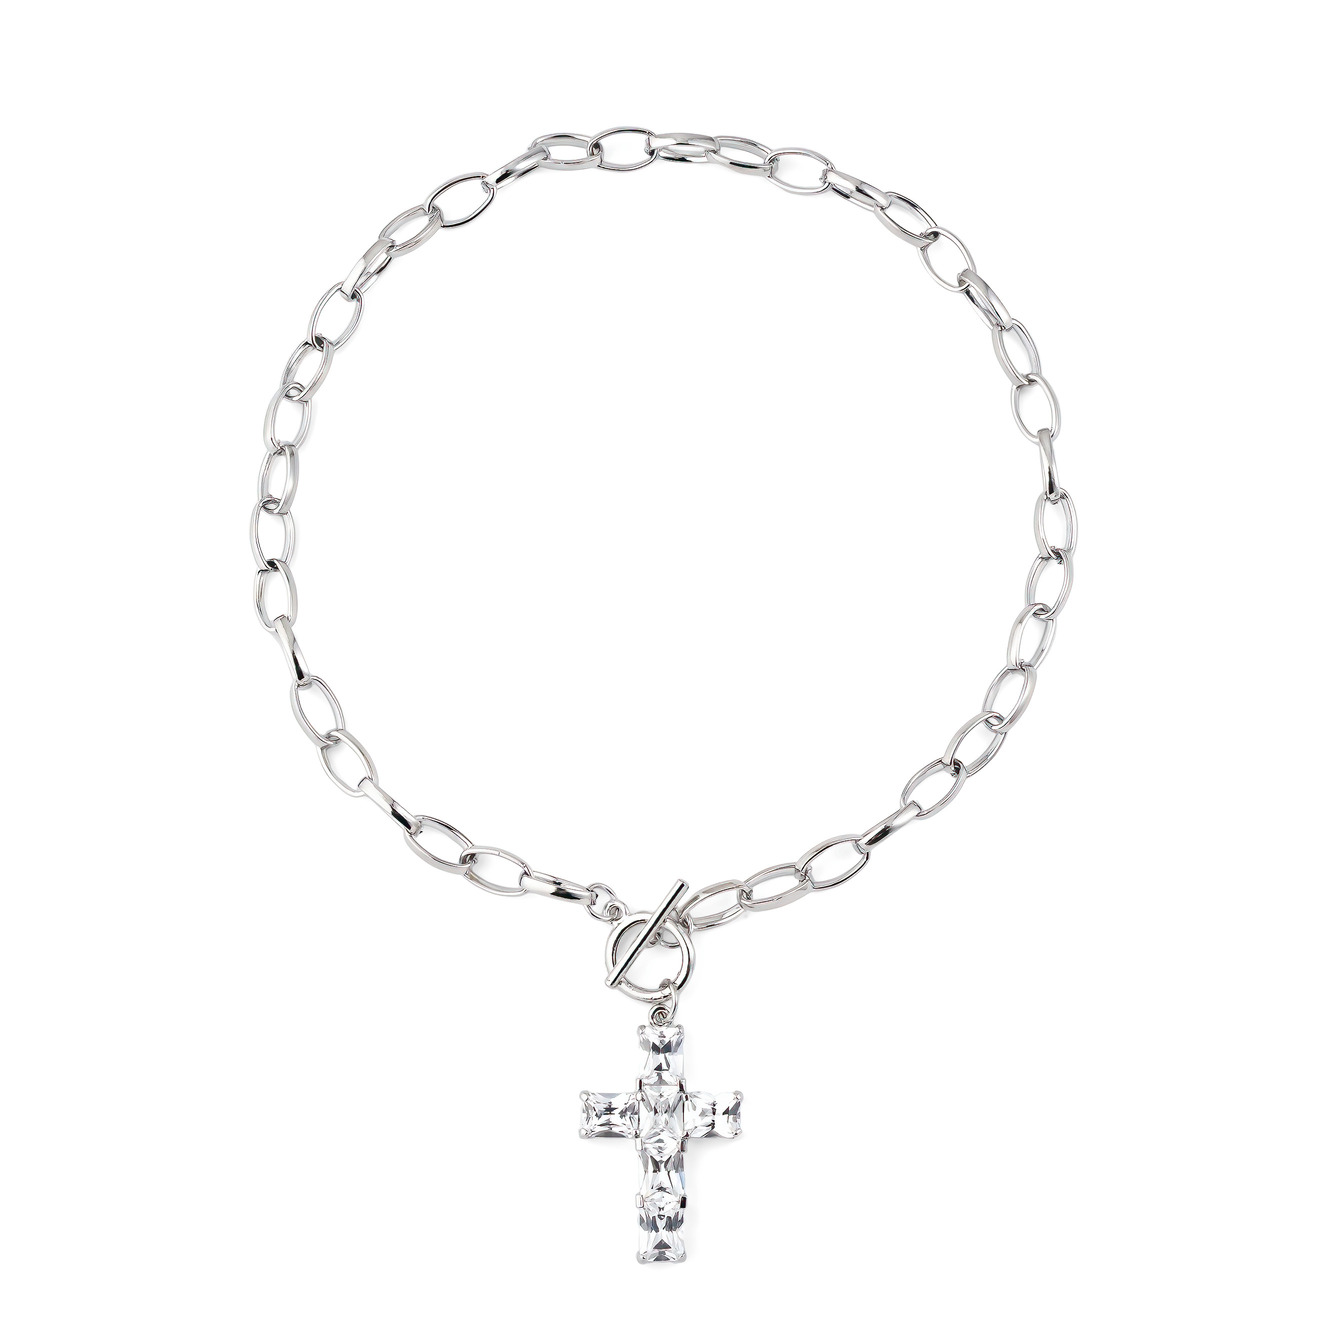 Herald Percy Серебристое колье-цепь с подвеской крестом из кристаллов herald percy серебристое колье с прозрачными и белыми камнями